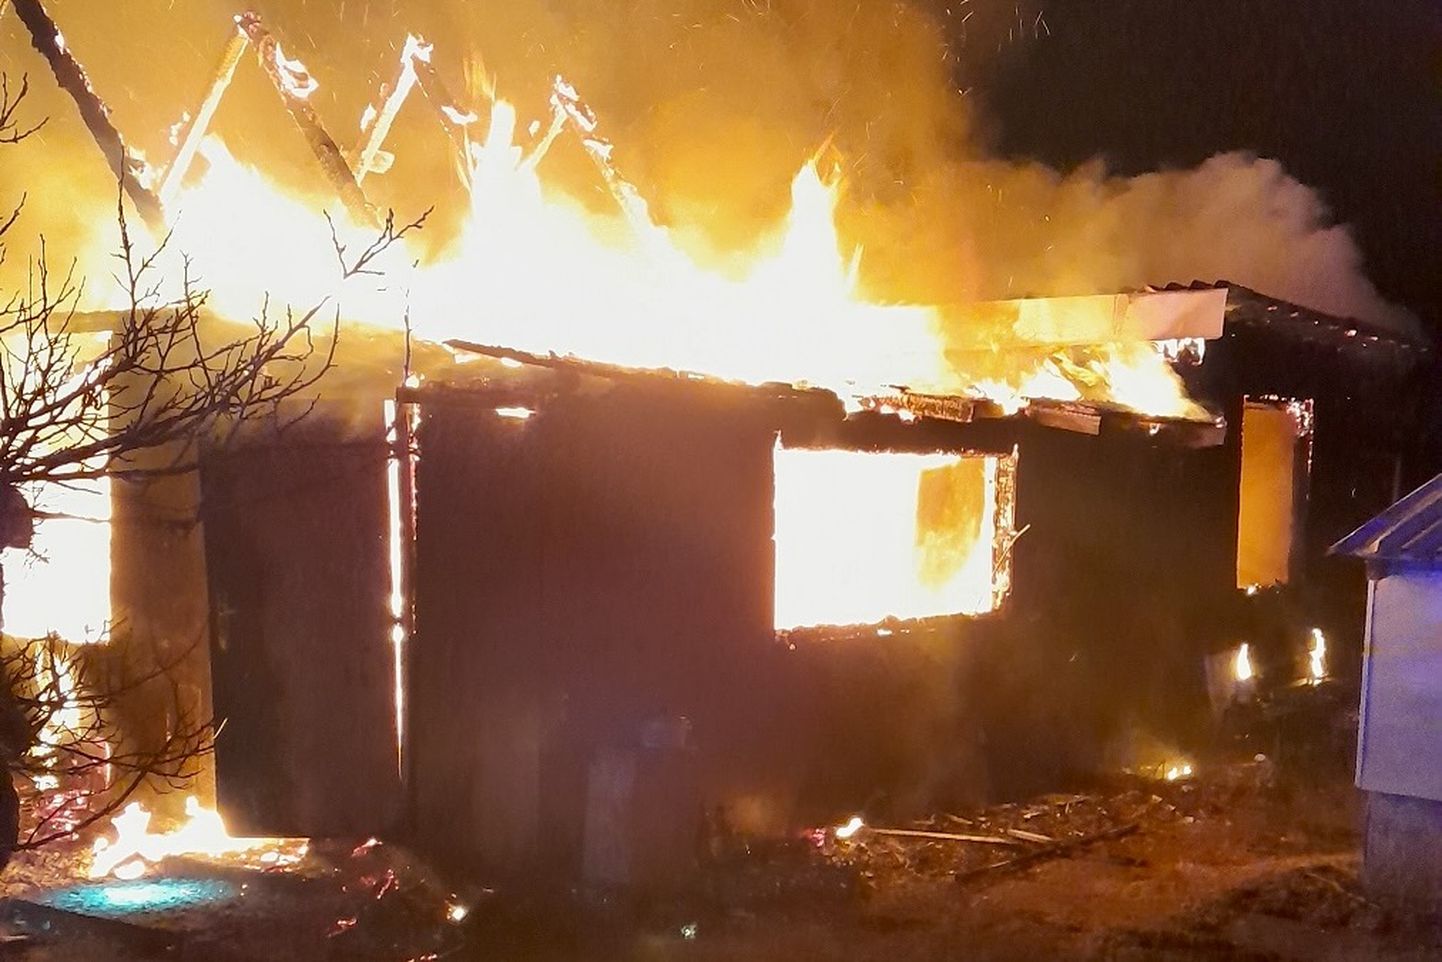 В Кудрукюла, дачном пригороде Нарвы, в огне пожара полностью сгорел садовый домик.